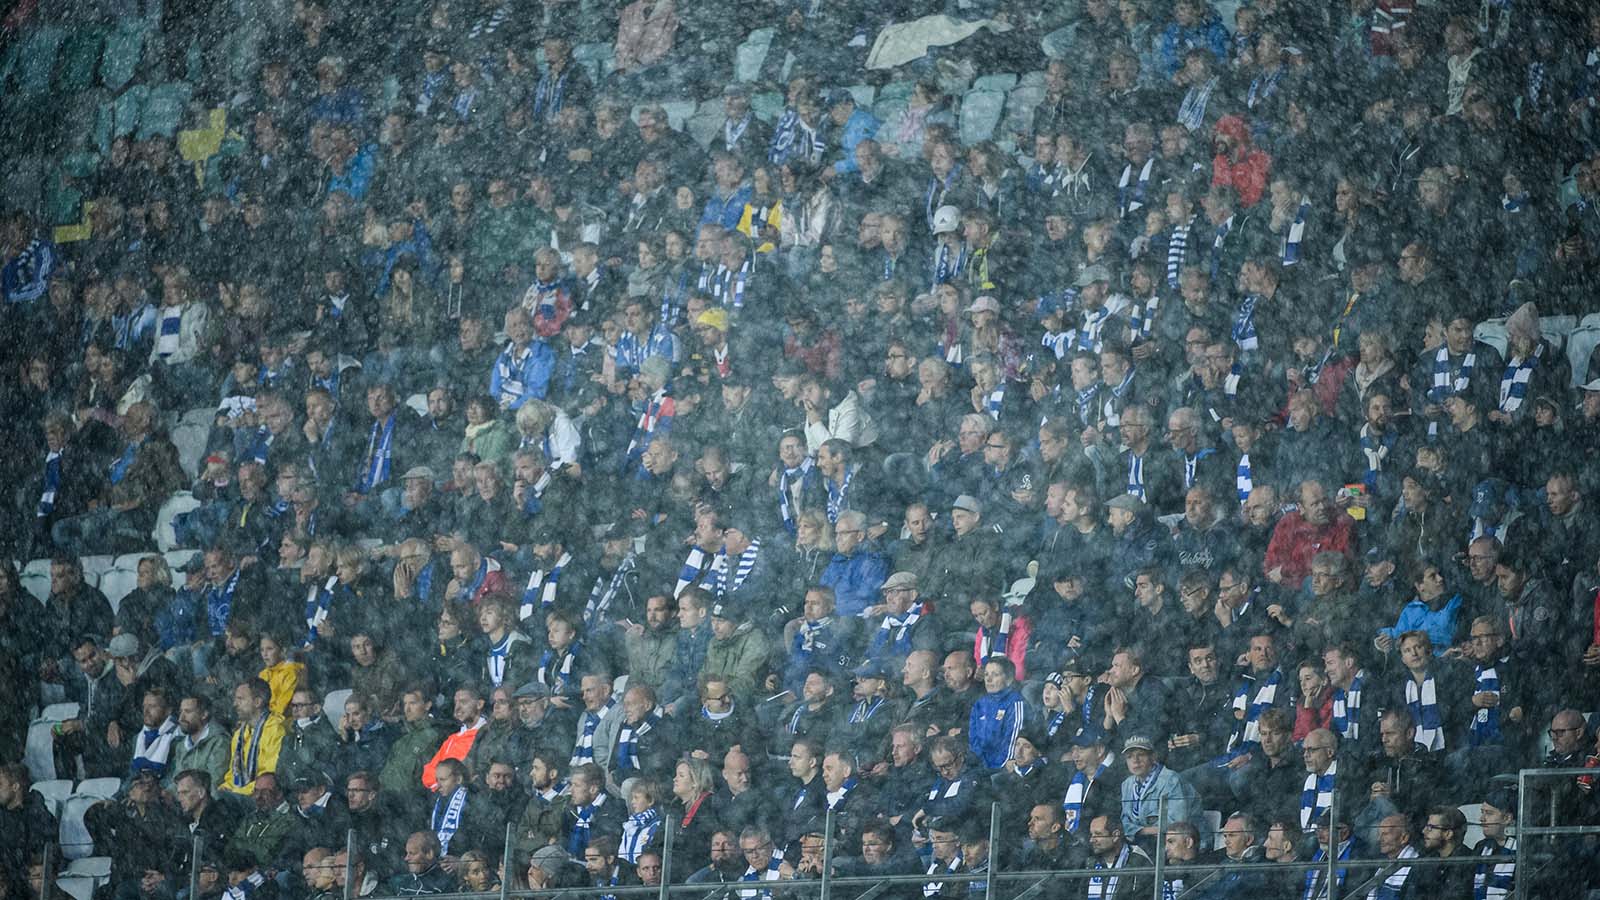 180916 Publik i regnet under fotbollsmatchen i Allsvenskan mellan IFK Göteborg och Elfsborg den 16 september 2018 i Göteborg. Foto: Jörgen Jarnberger / BILDBYRÅN / Kod JJ / Cop 112